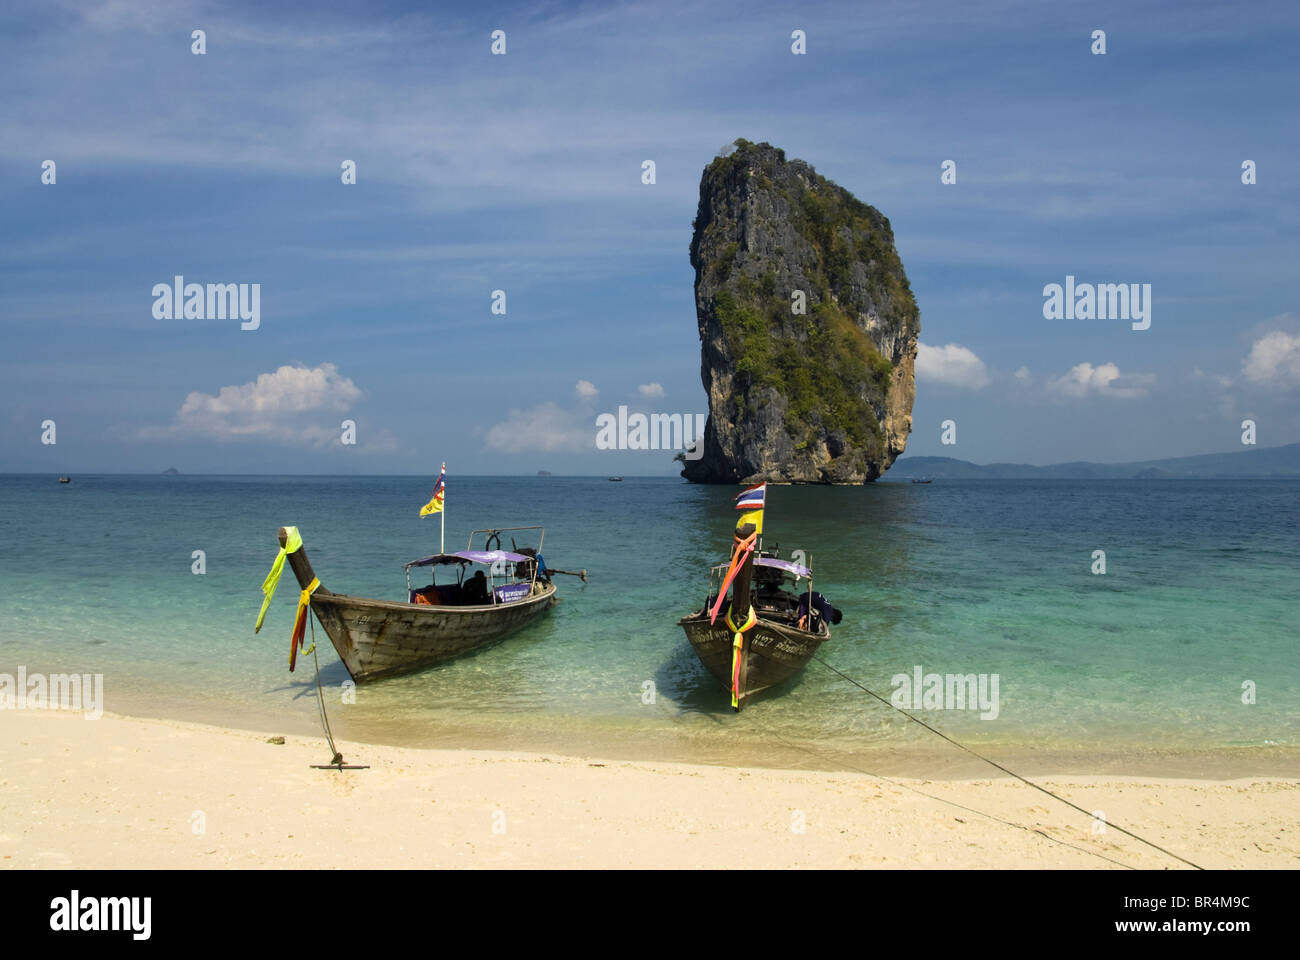 Longtail boats on the beach, Poda Island, Thailand Stock Photo